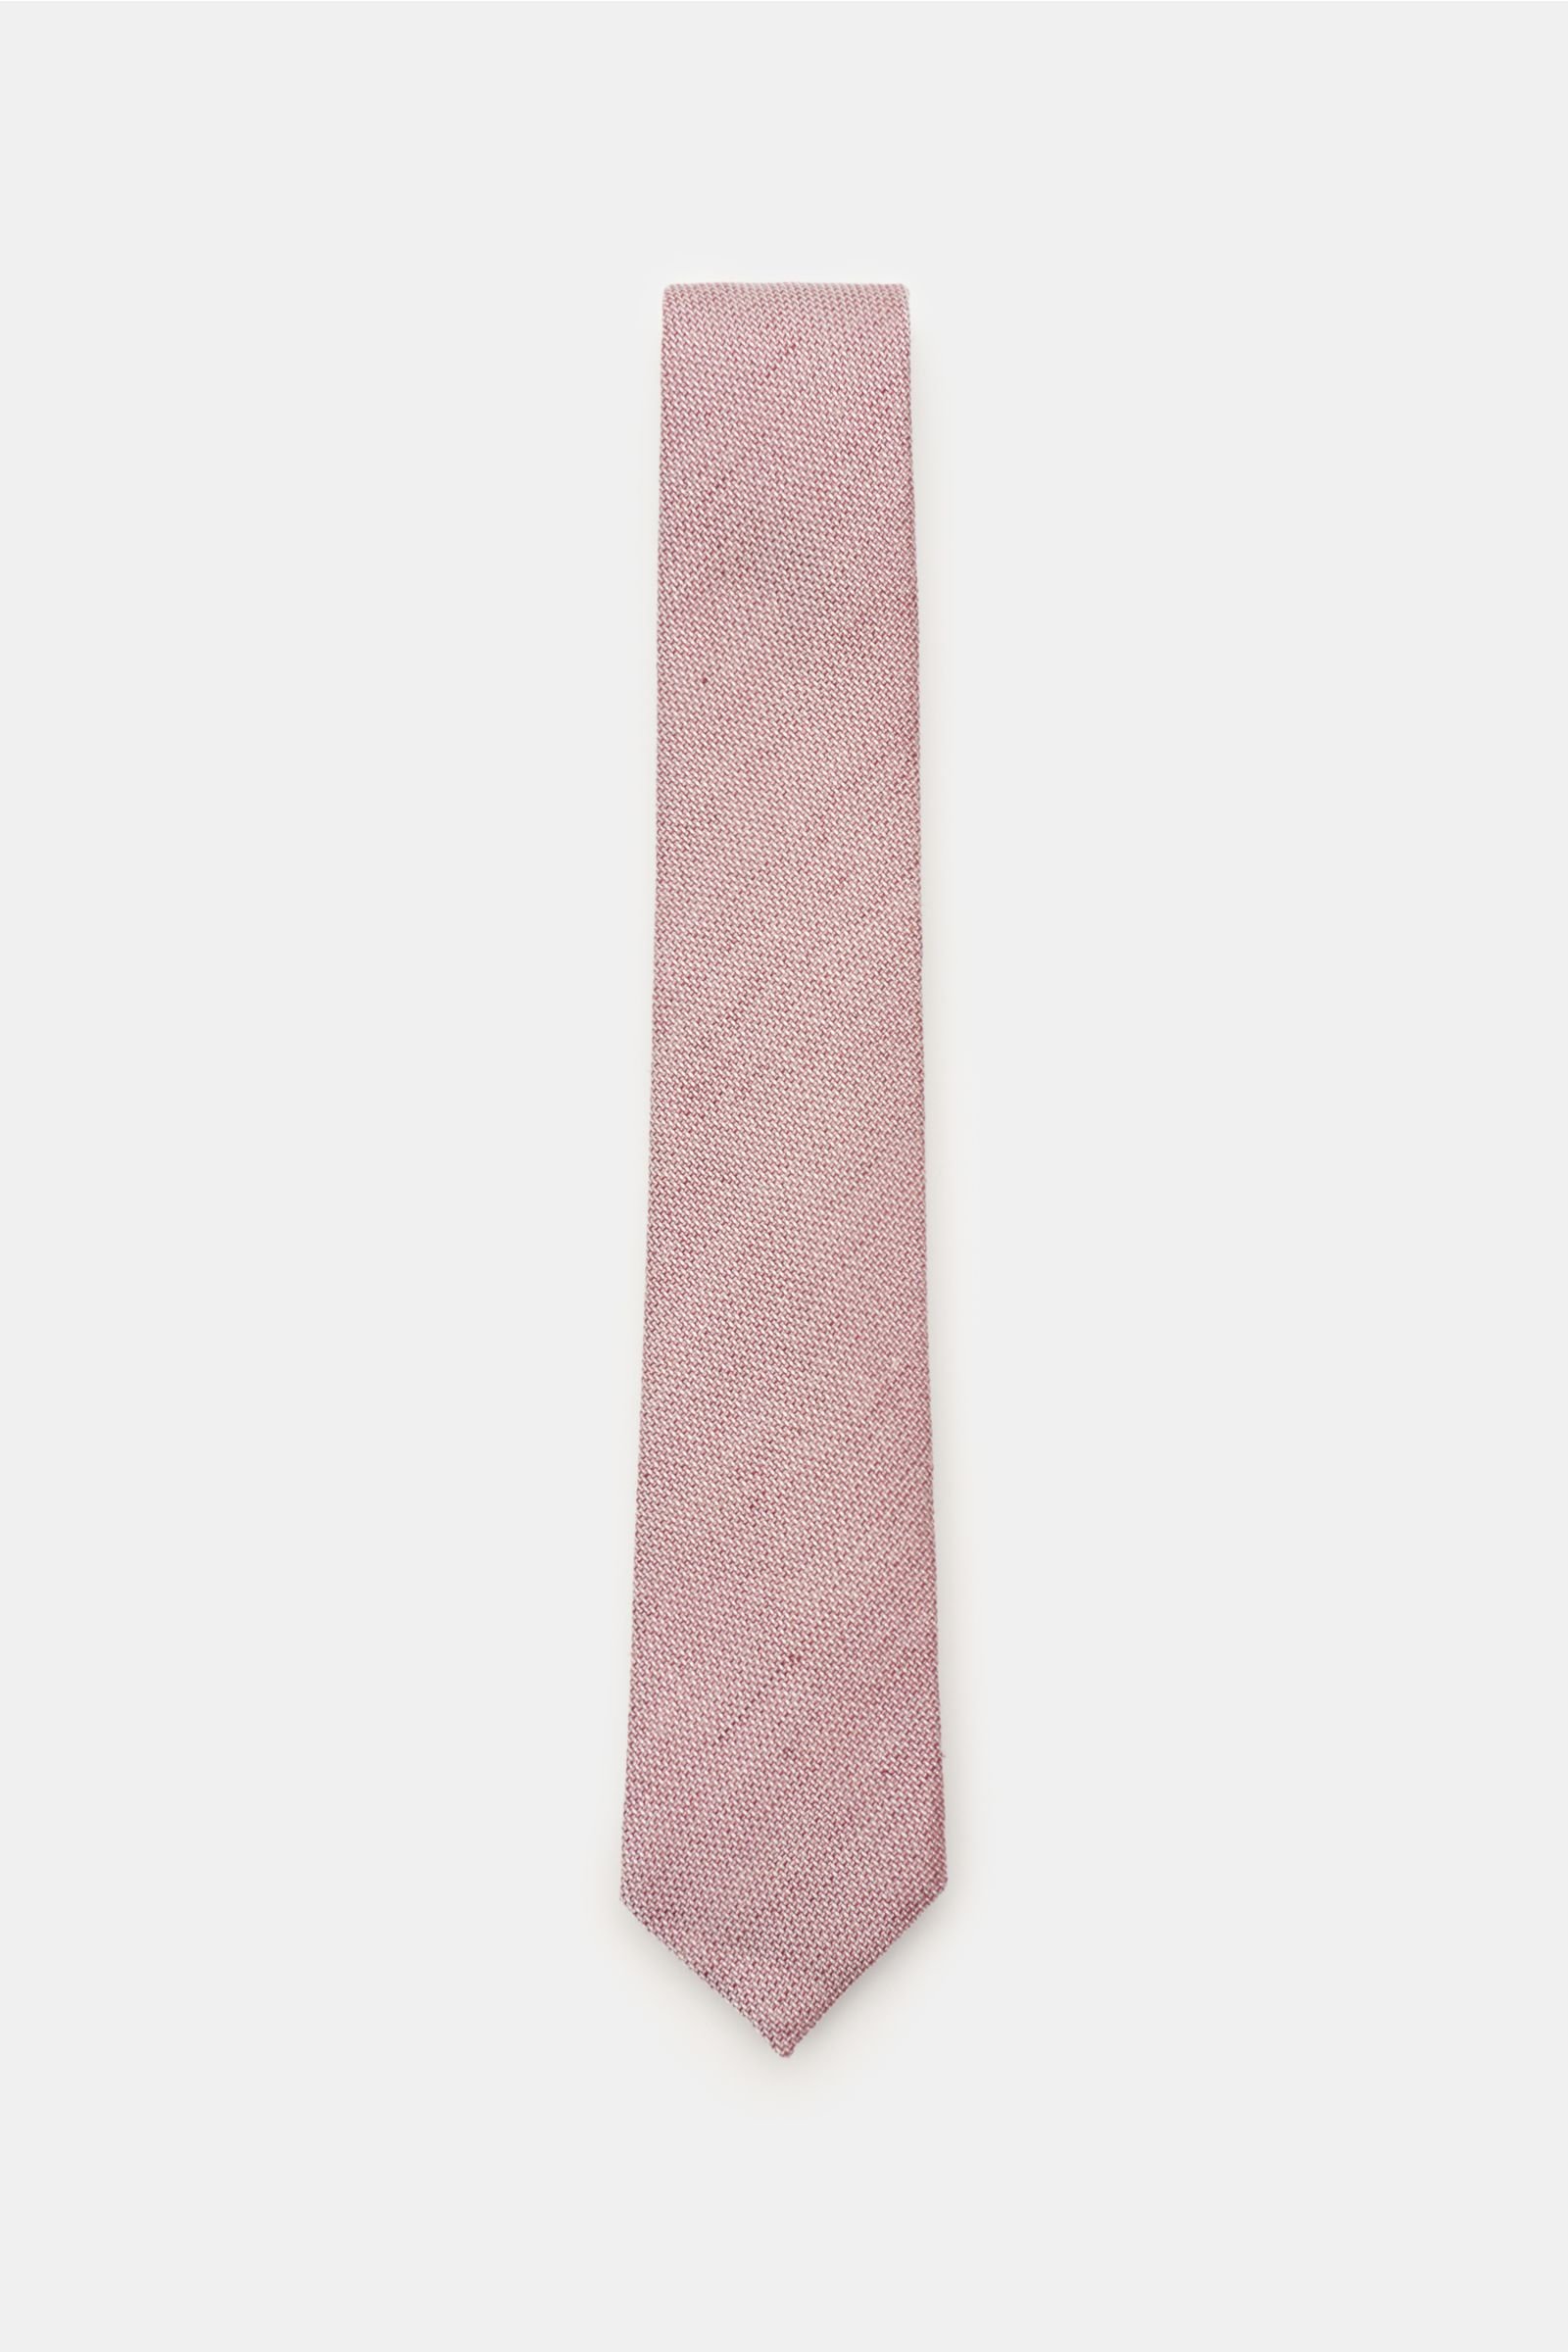 Krawatte altrosa